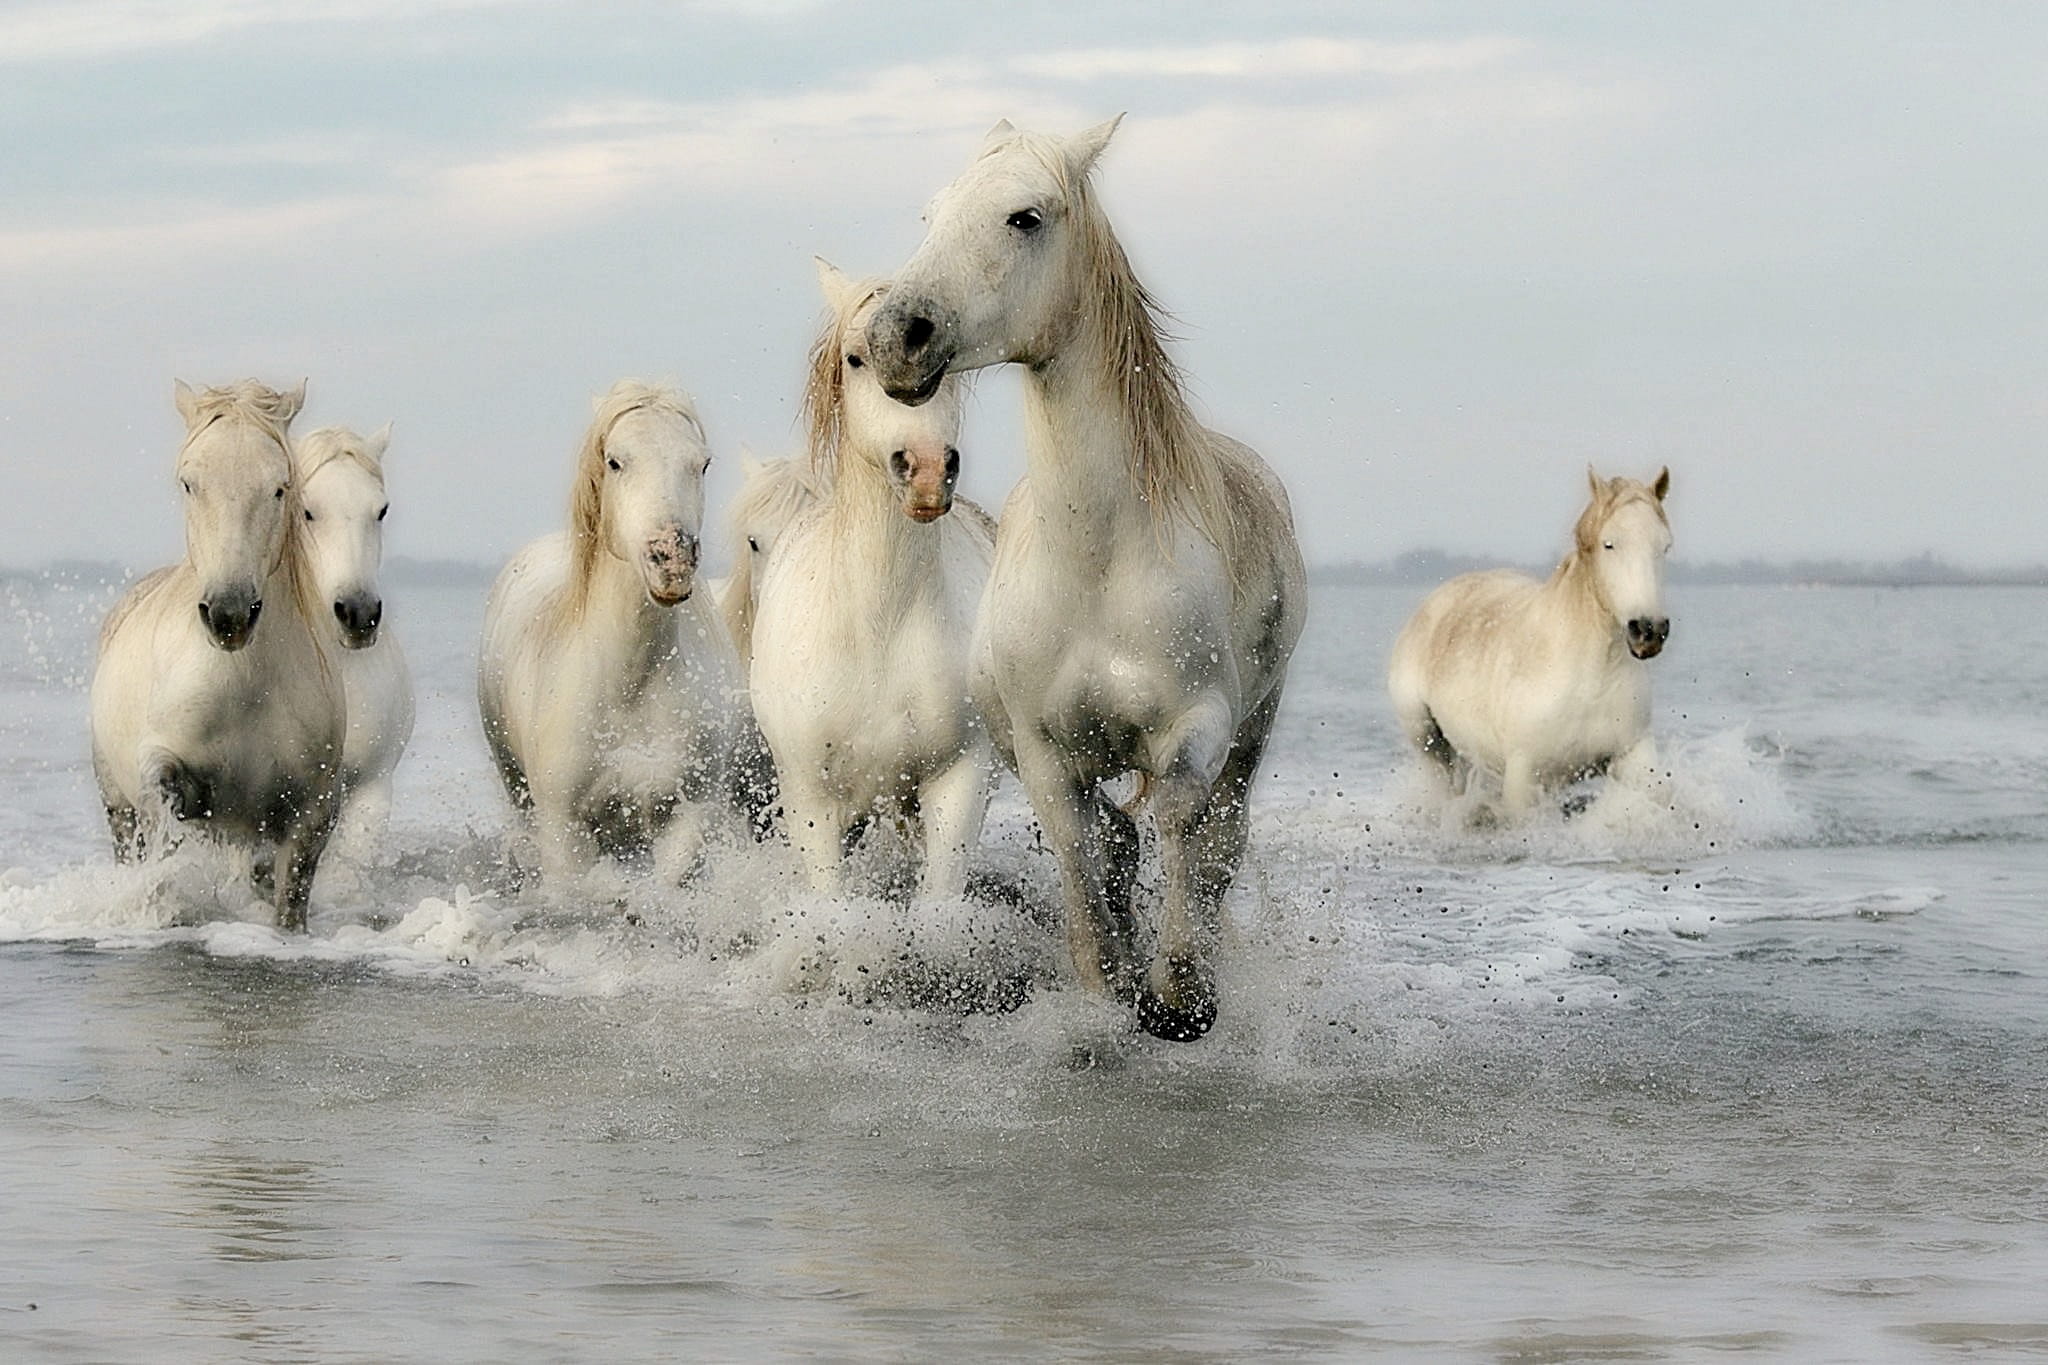 seven white horse running across the water, horses, mane, horseback riding